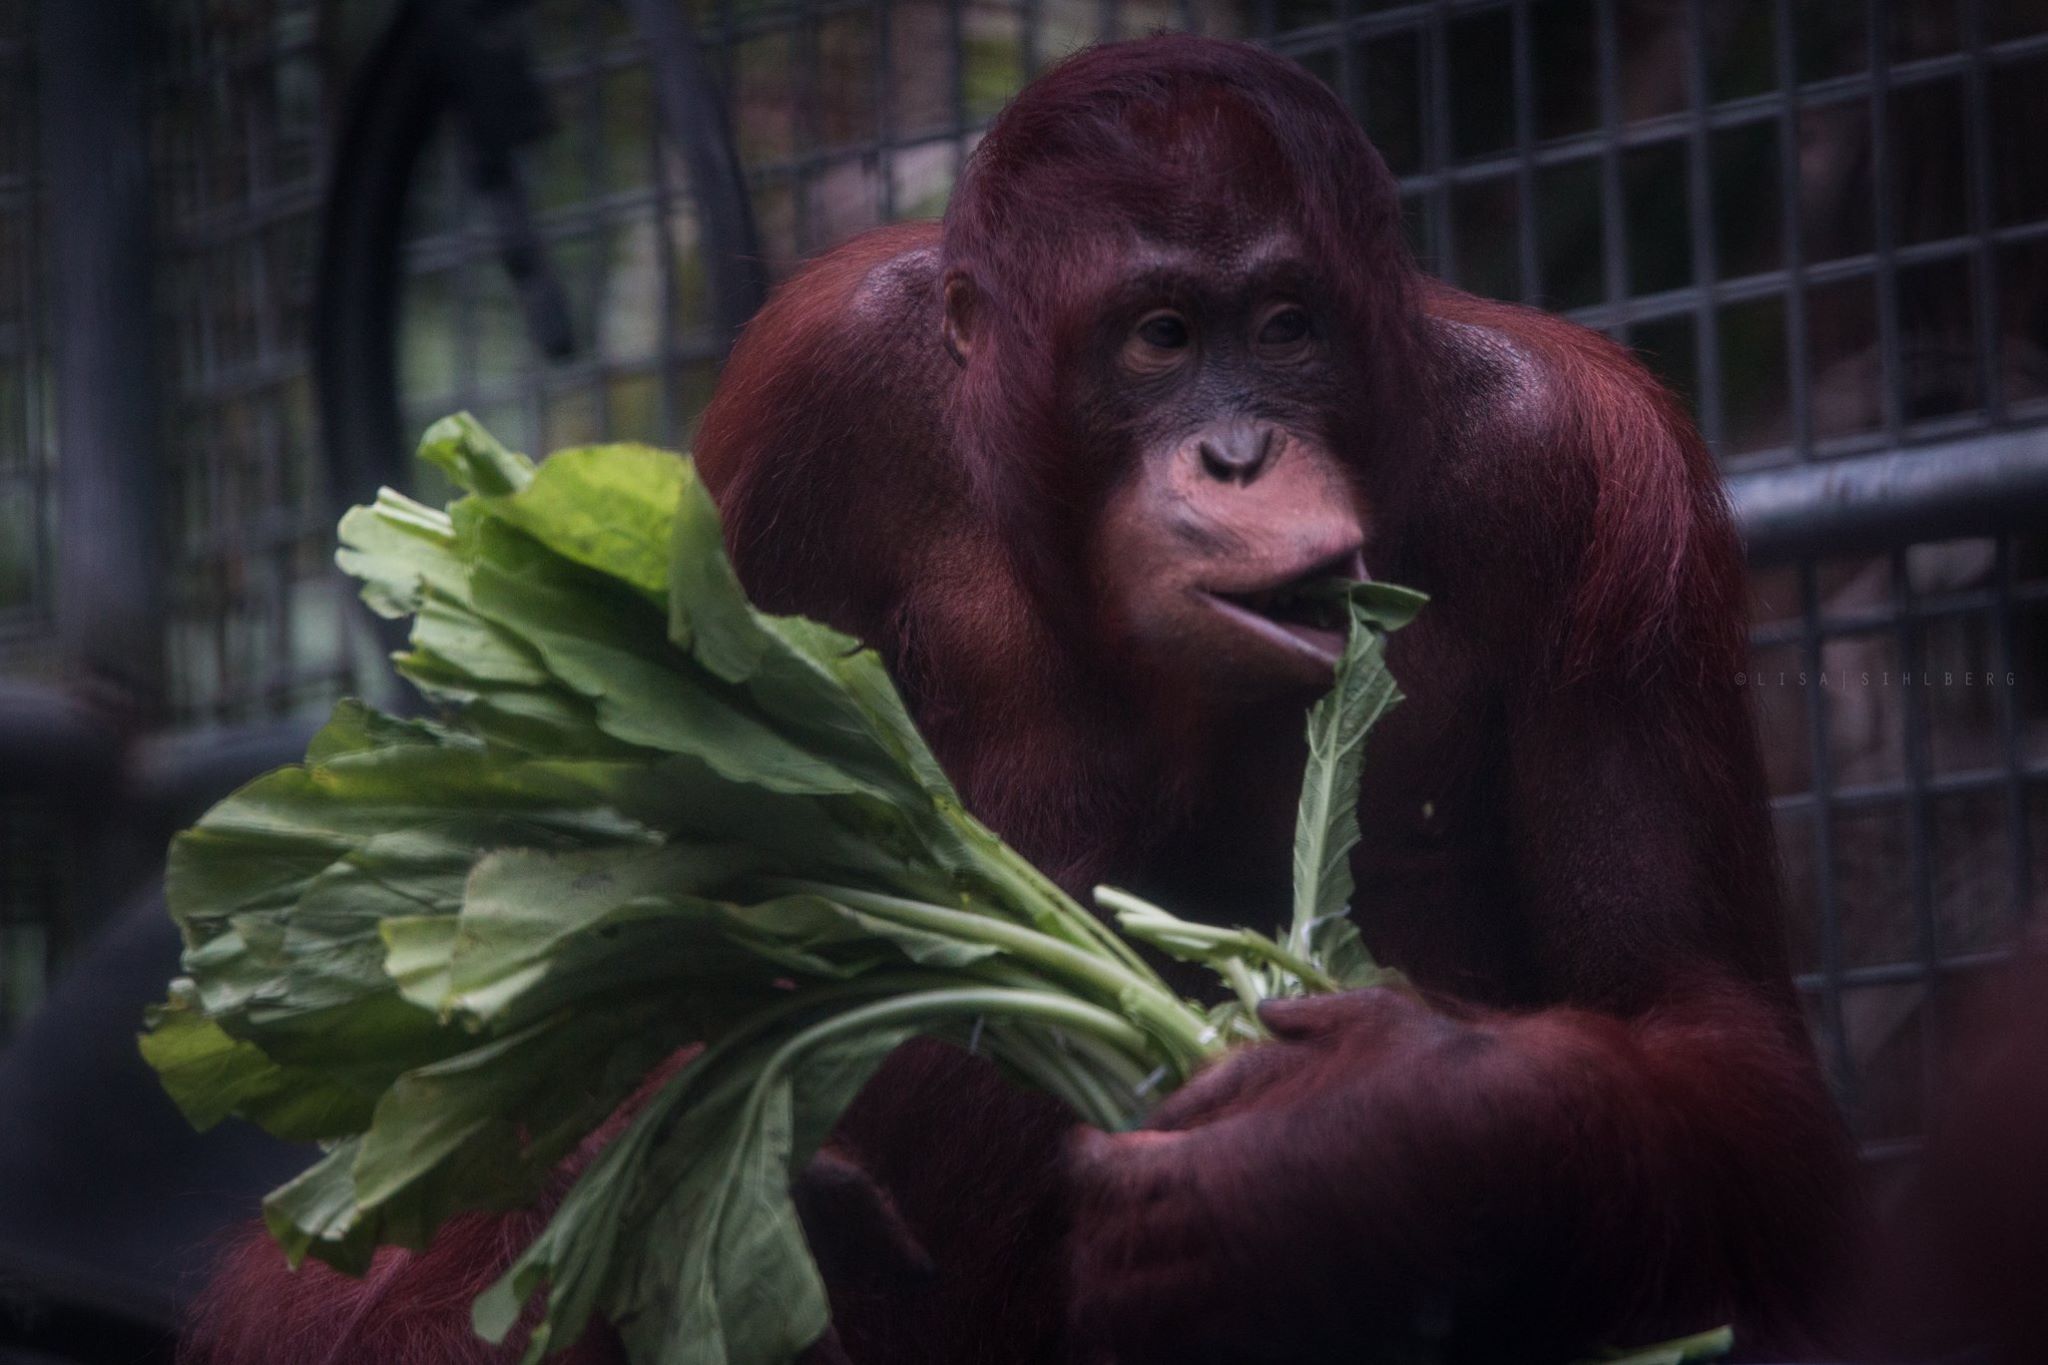 Orangutang på rehabiliteringscenter i Borneo. Foto: Lisa Sihlberg http://www.natursidan.se/fotografer/naturfotograf-lisa-sihlberg/